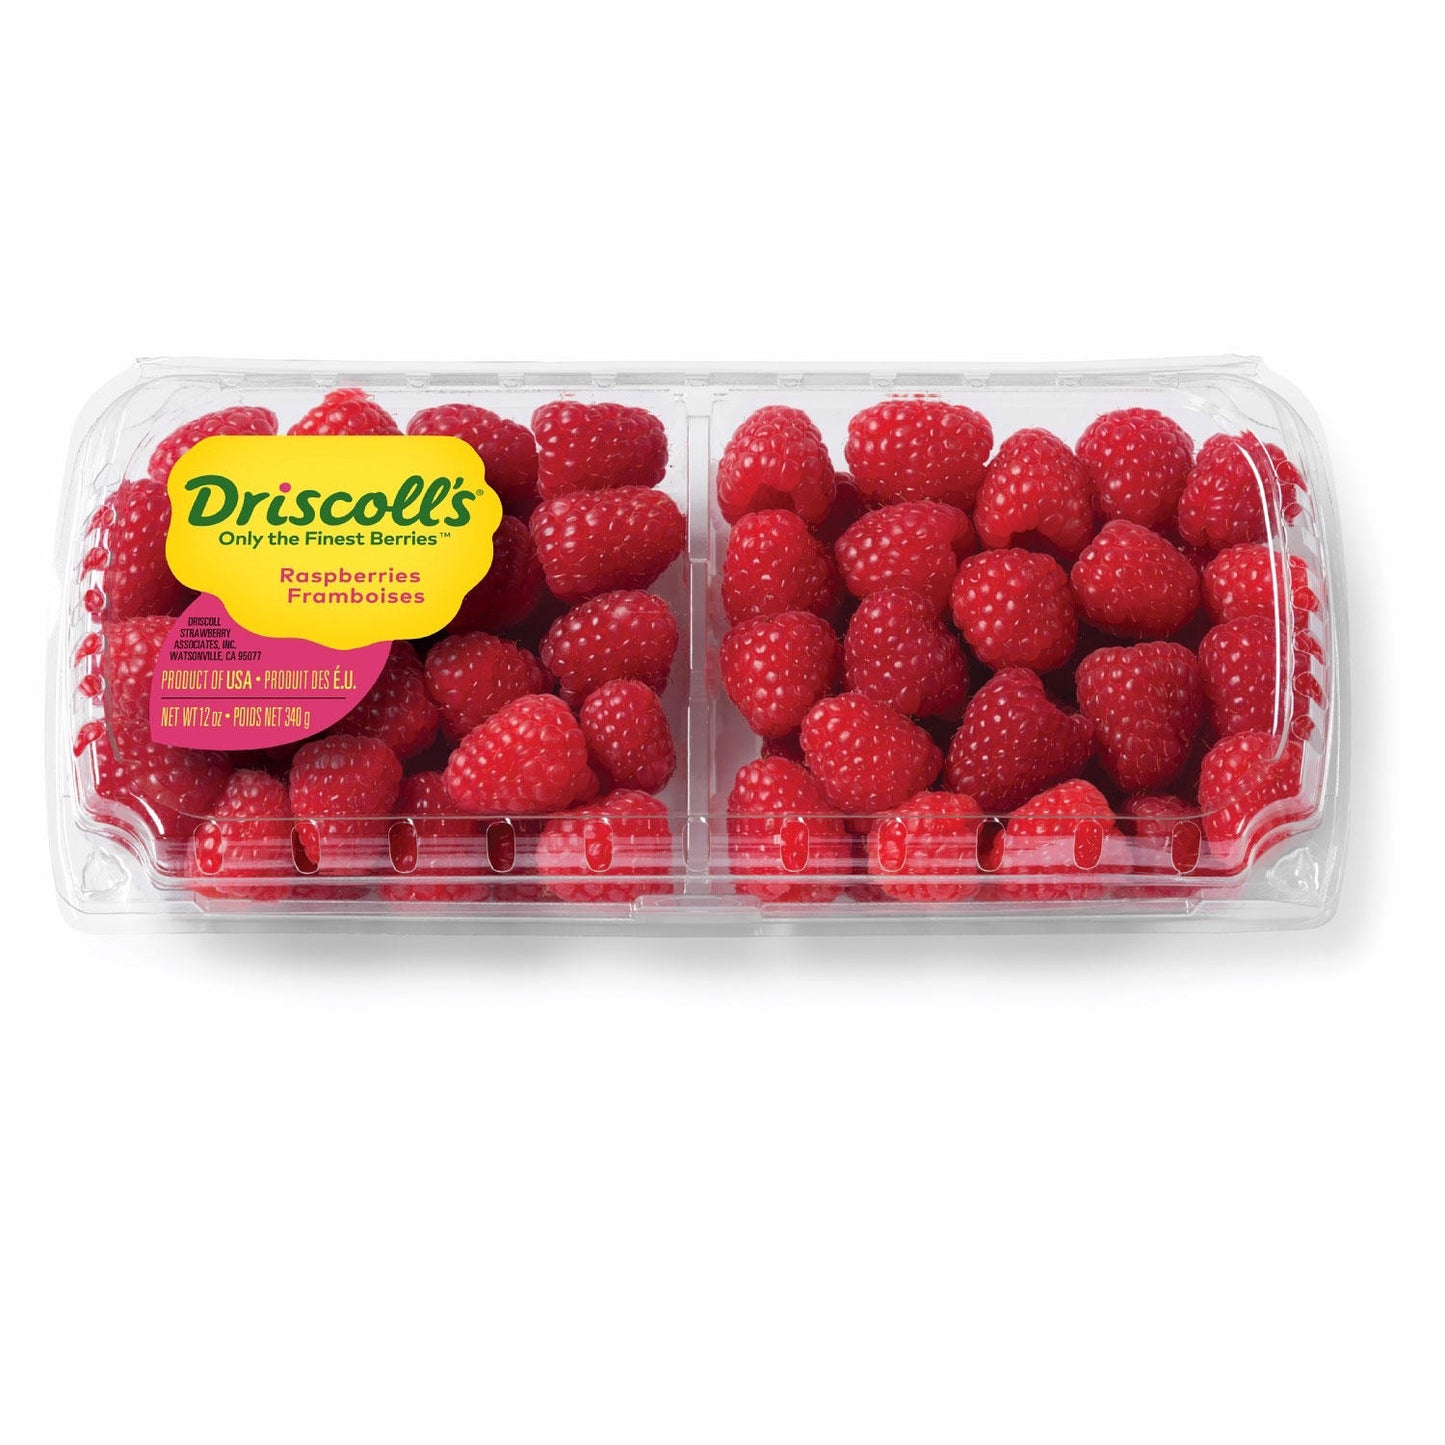 Raspberries (12 oz.)